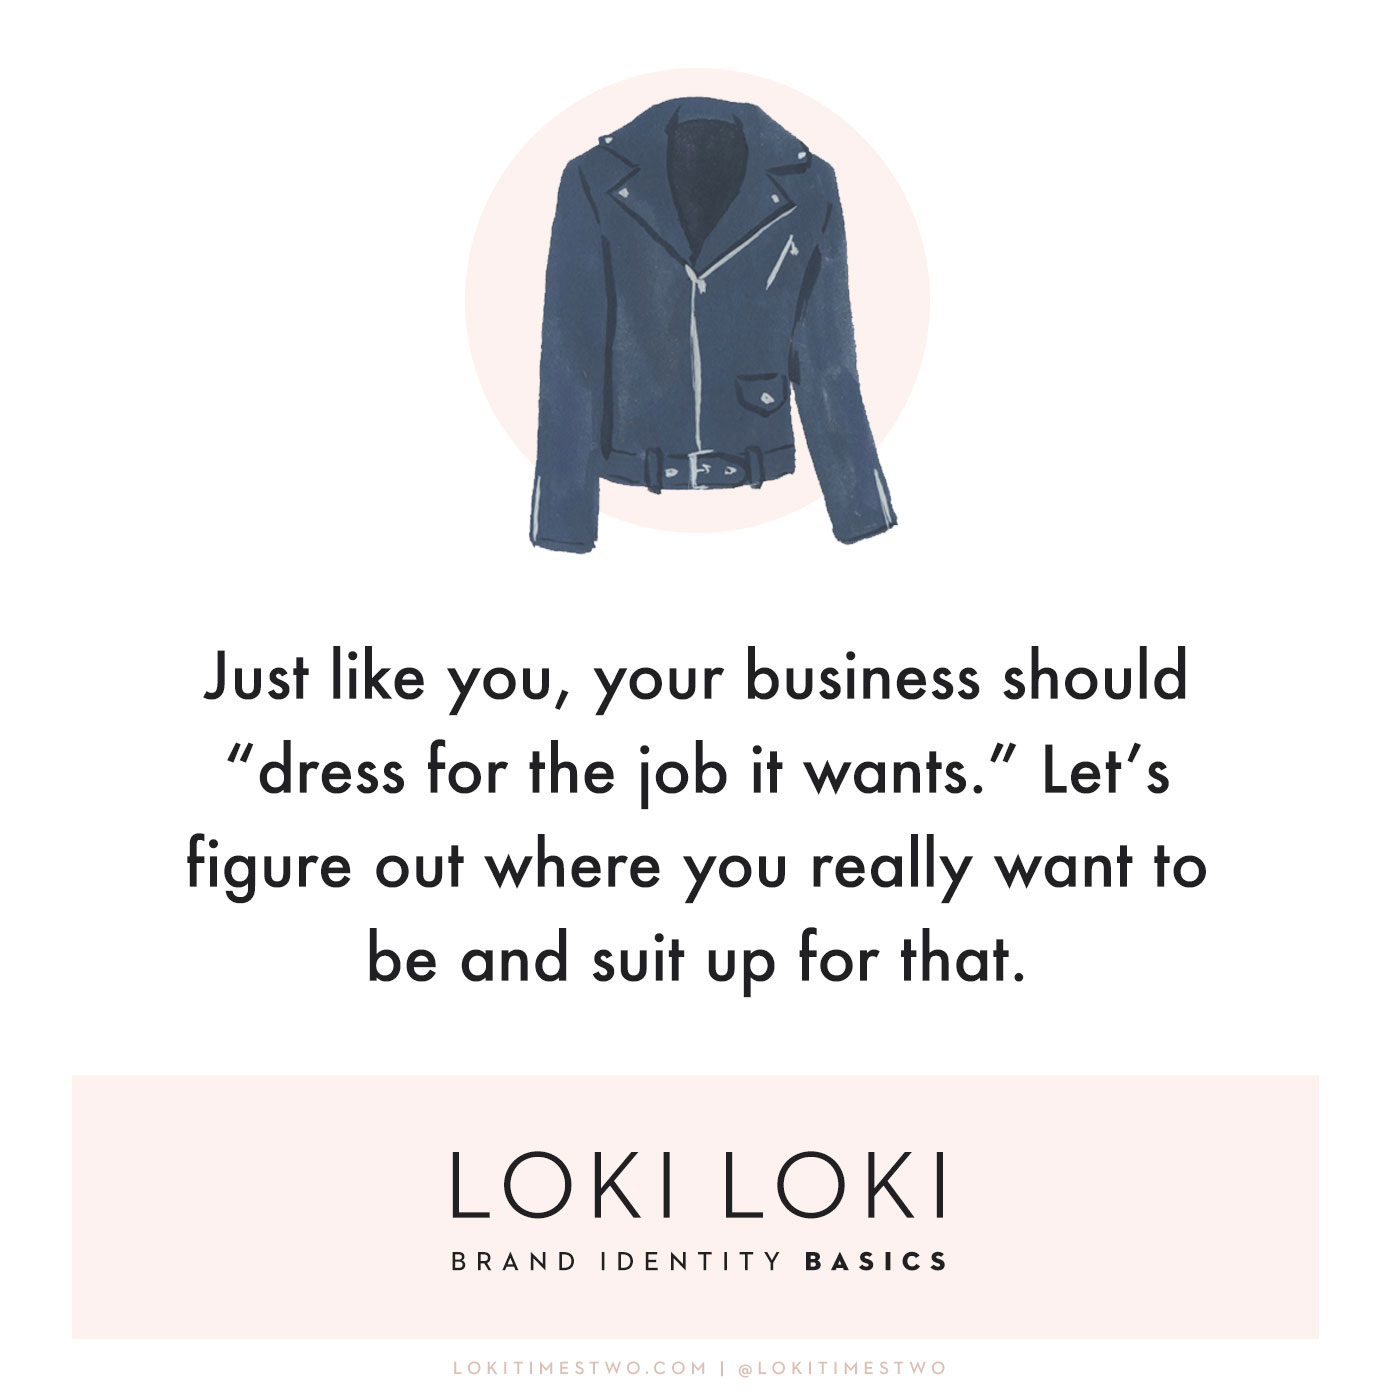 Loki Loki Brand Identity Basics Featured Image Theory Jacket